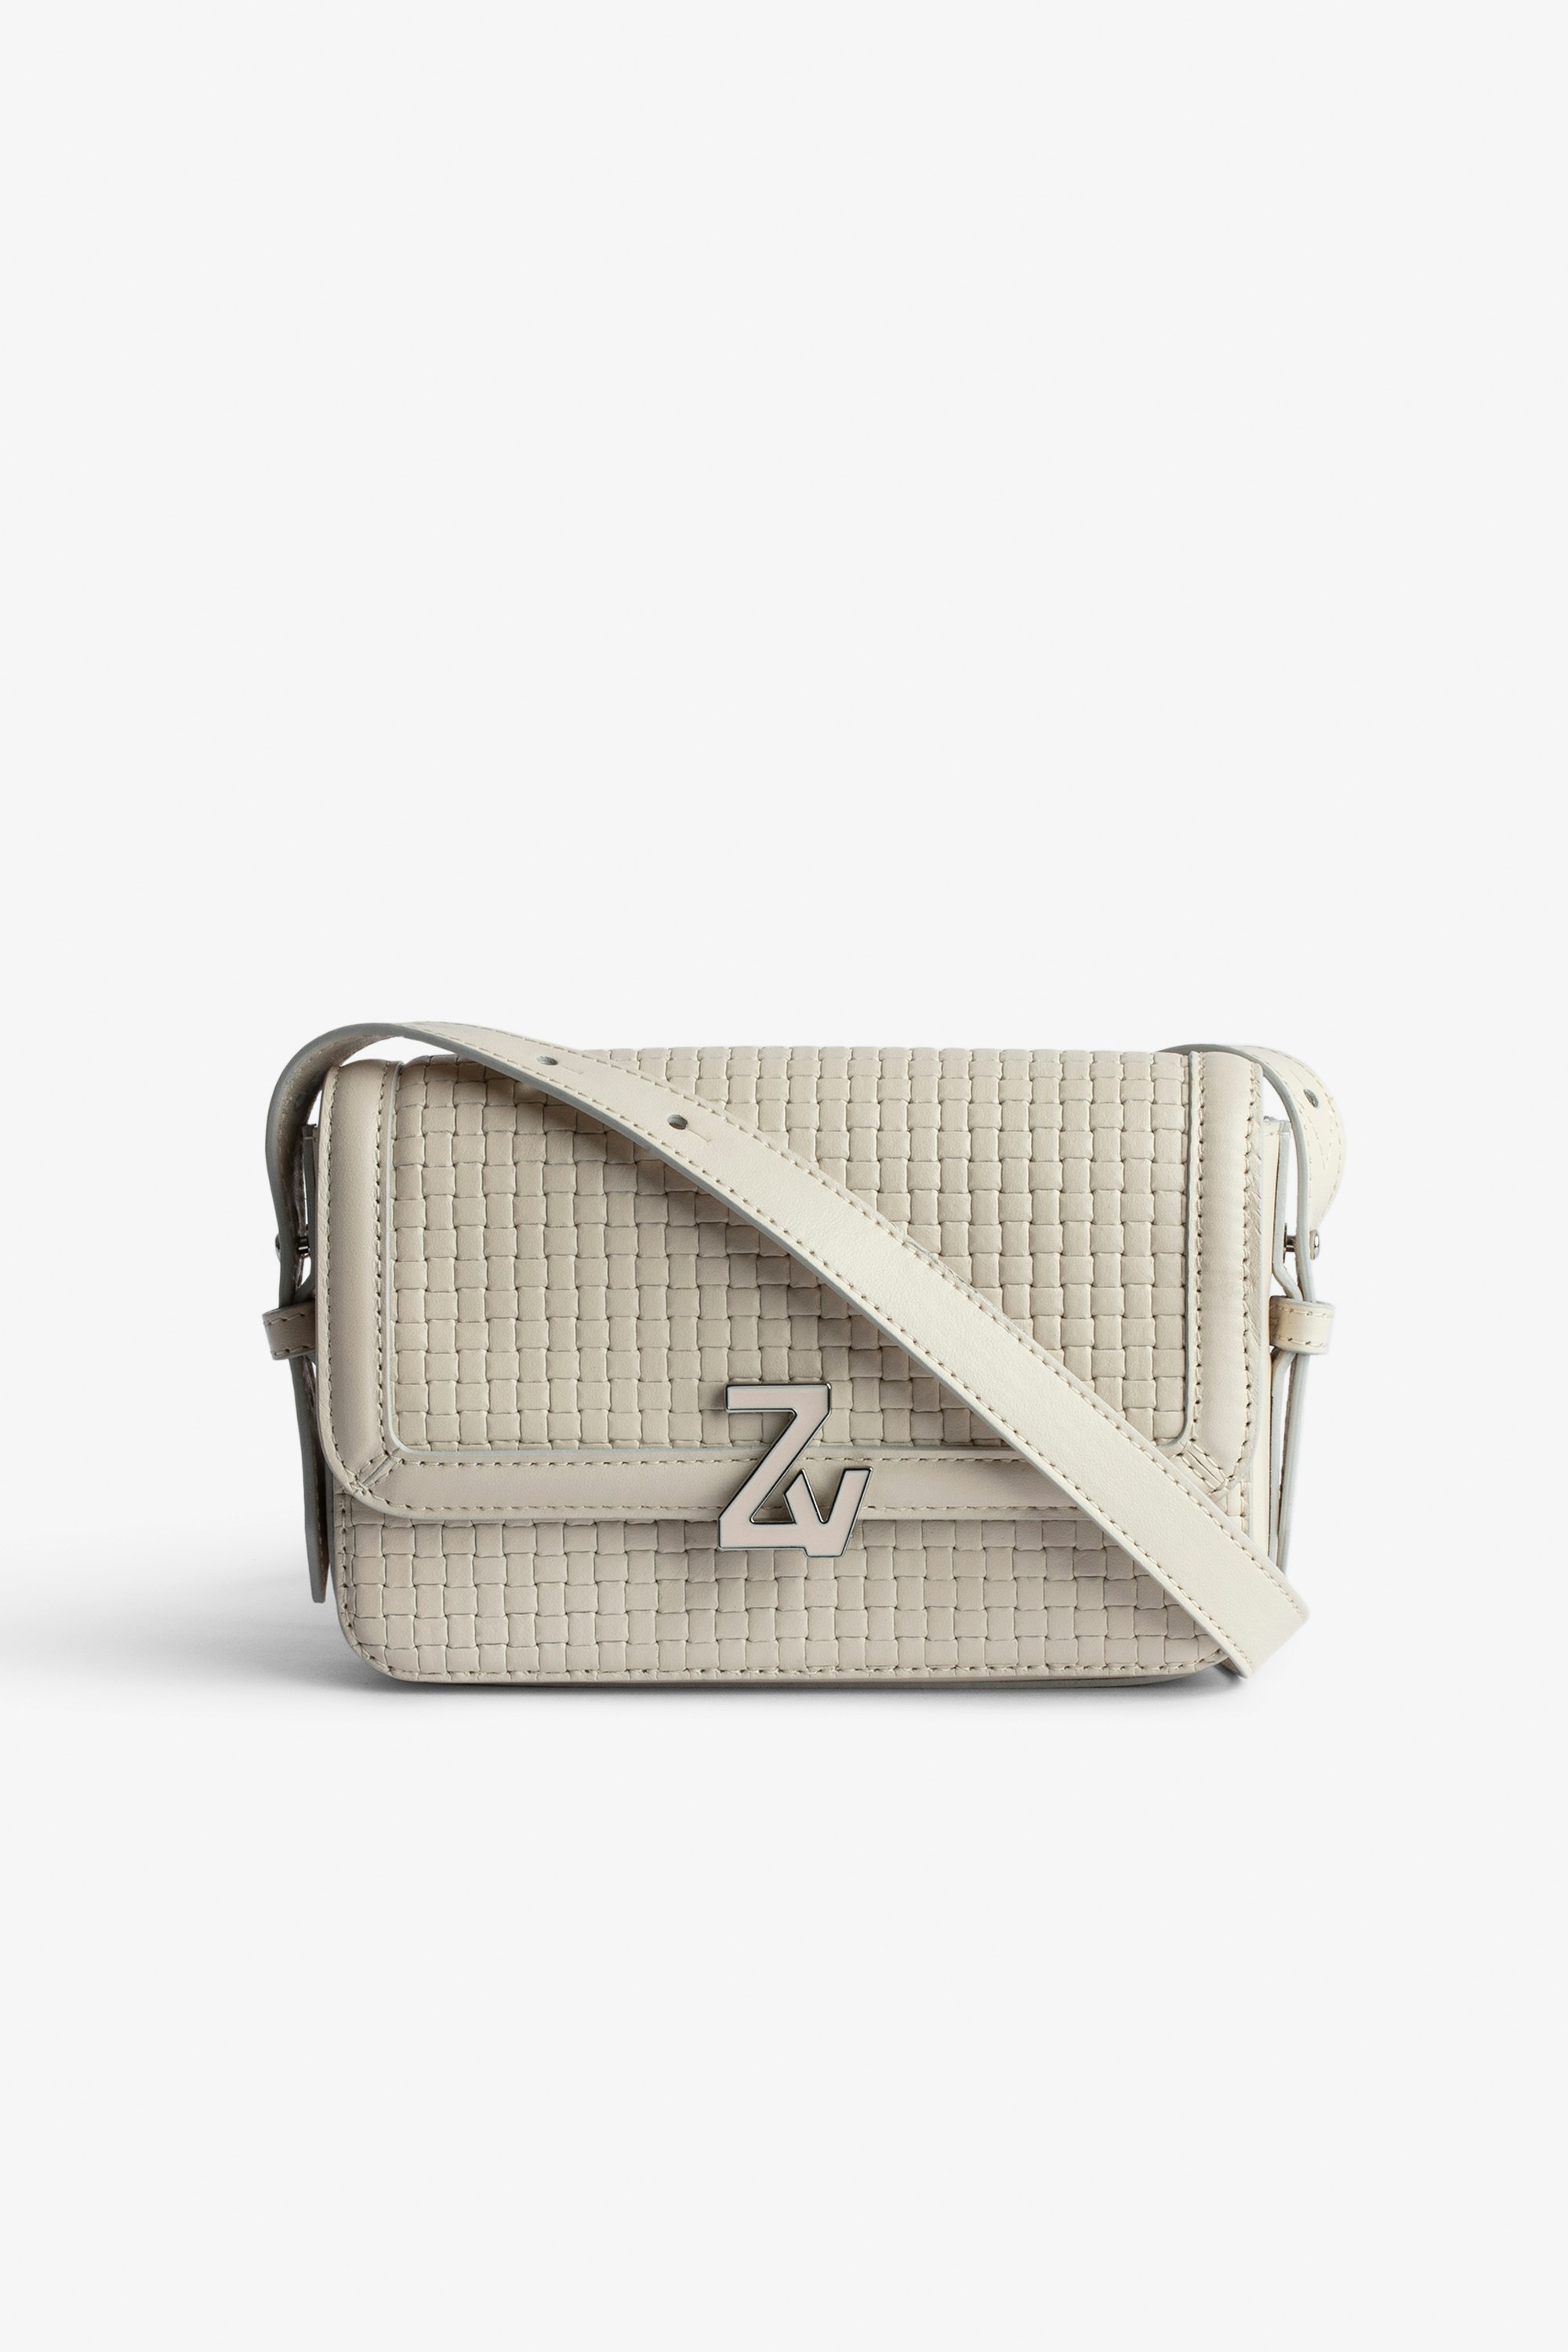 Tasche ZV Initiale Le Mini  Kleine Damen-Handtasche aus geflochtenem Leder in Ecru mit Schulterriemen und ZV-Schließe